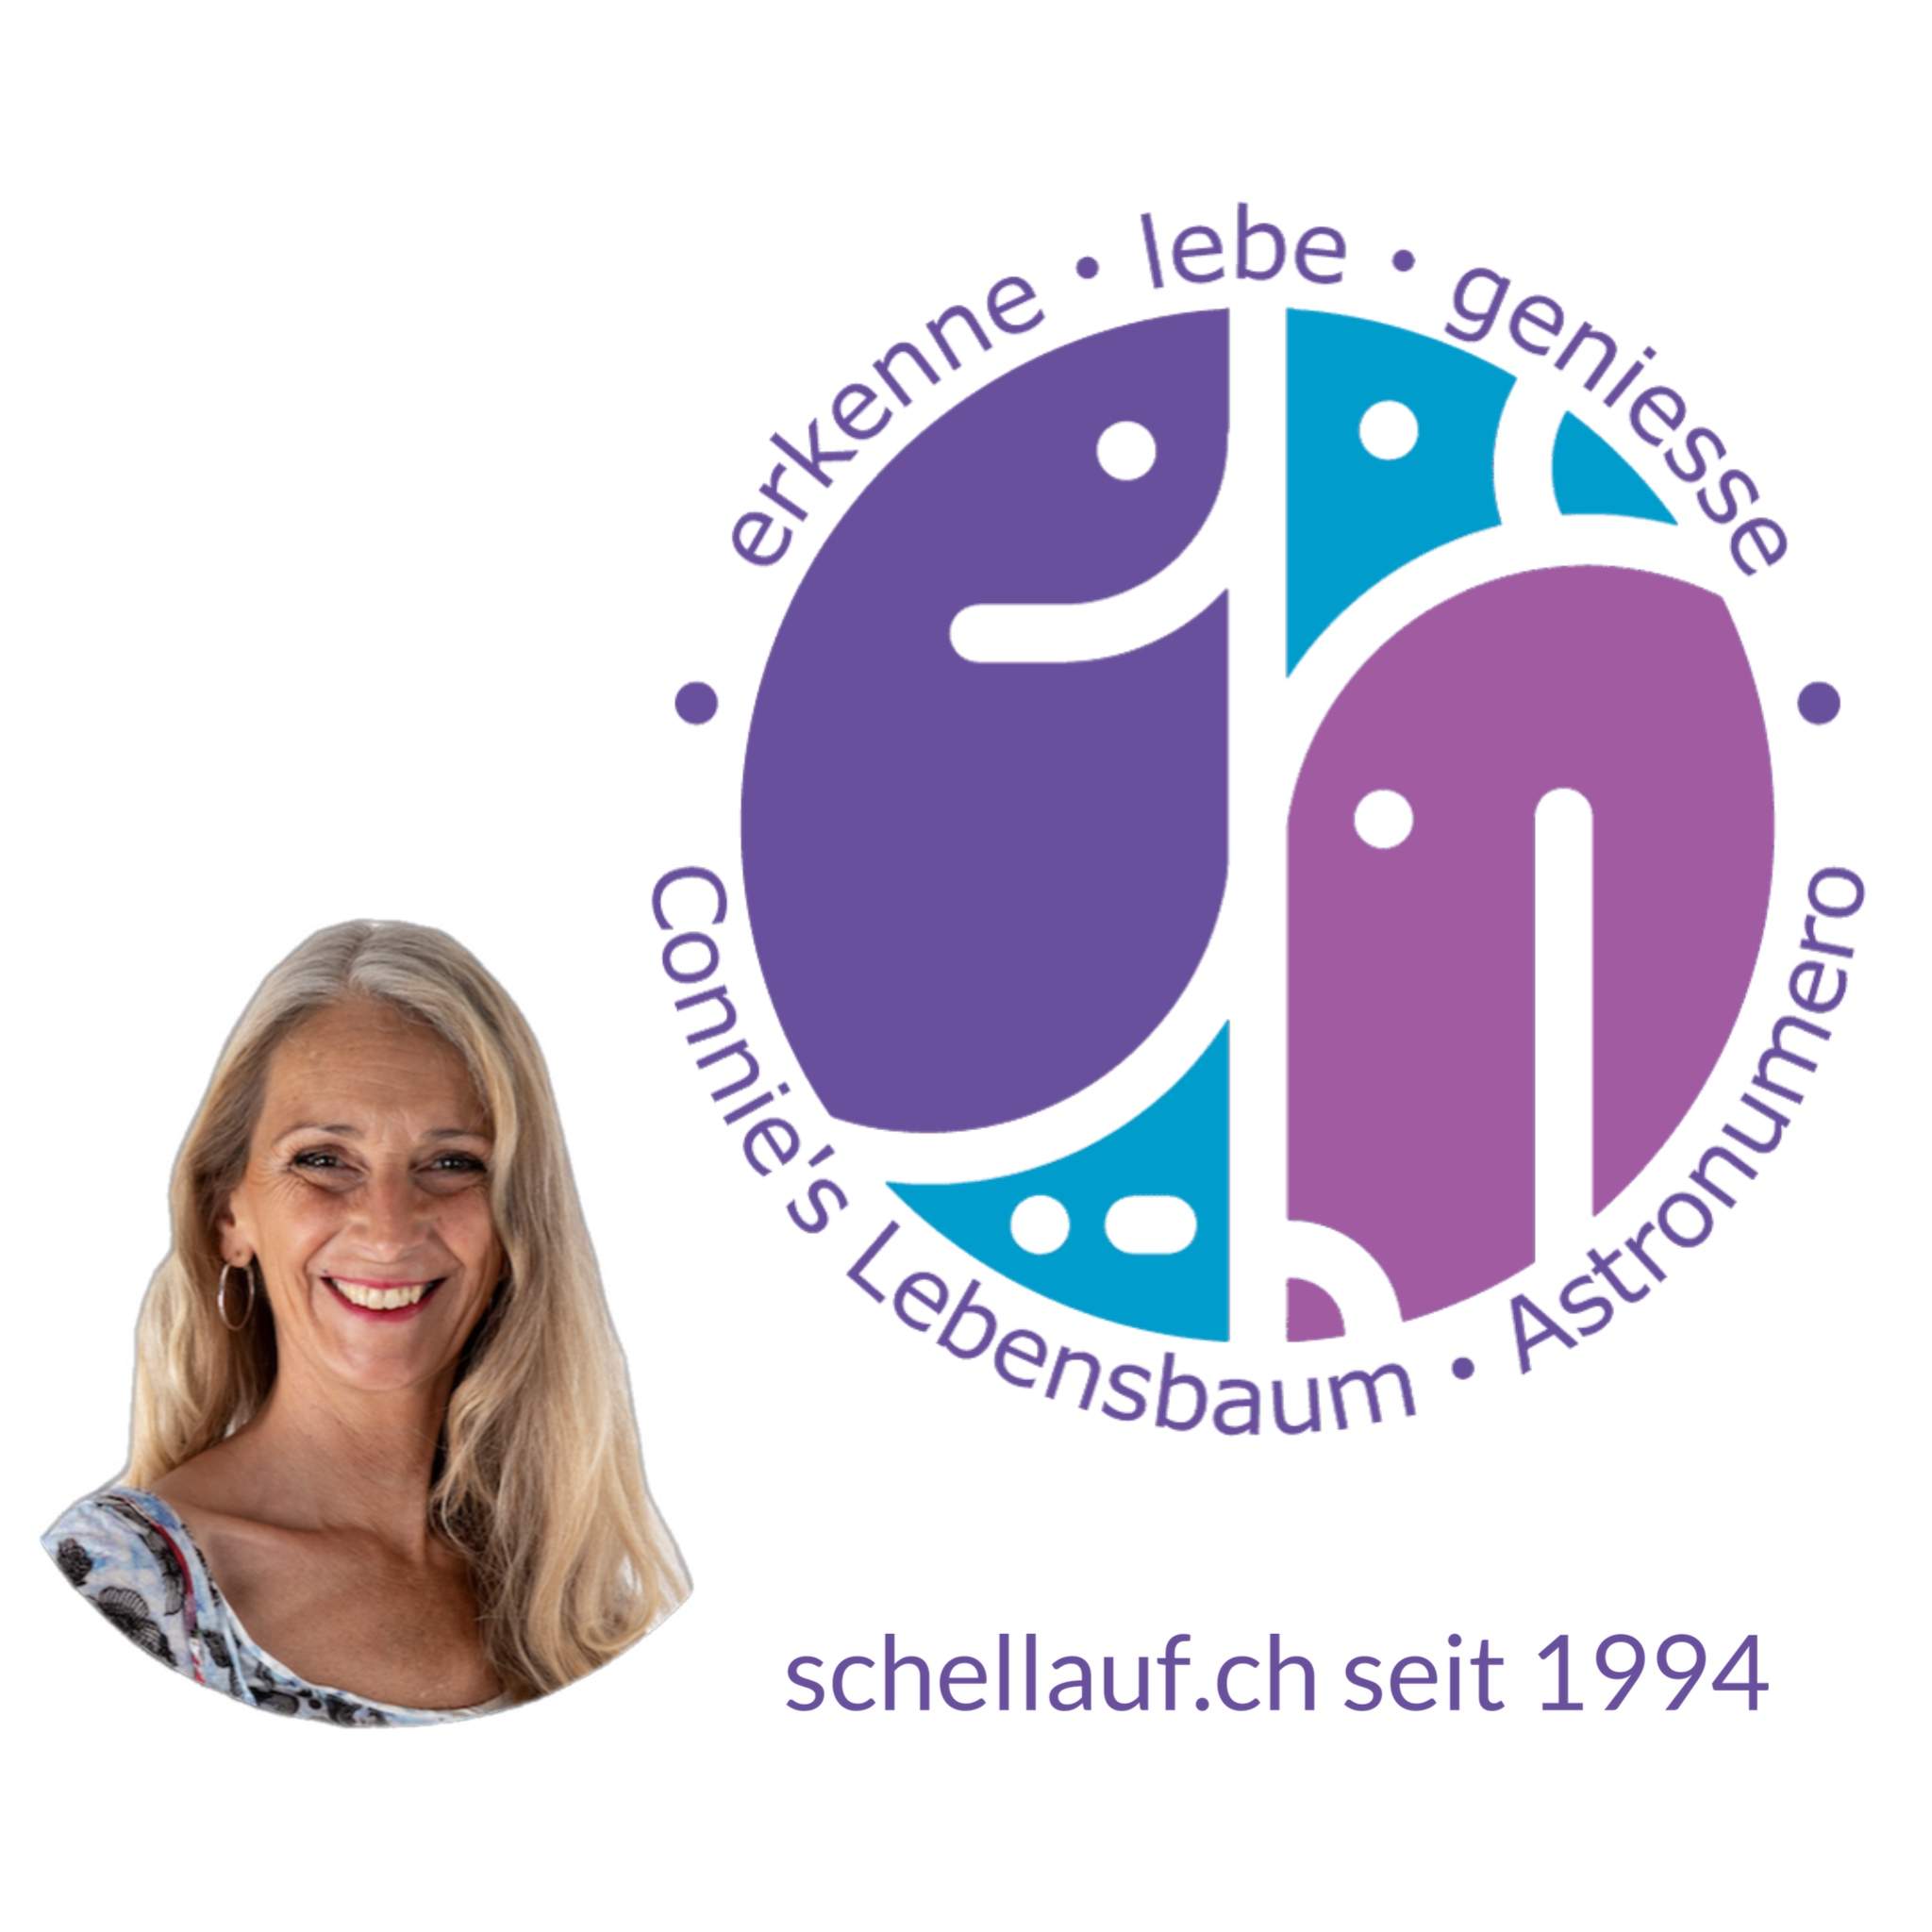 schellauf.ch mental medial life Coach Suhr Gränichen Aargau Luzern Schweiz über 25 Jahre Praxis für Energiearbeit kreativ systemische Aufstellung Familienberatung